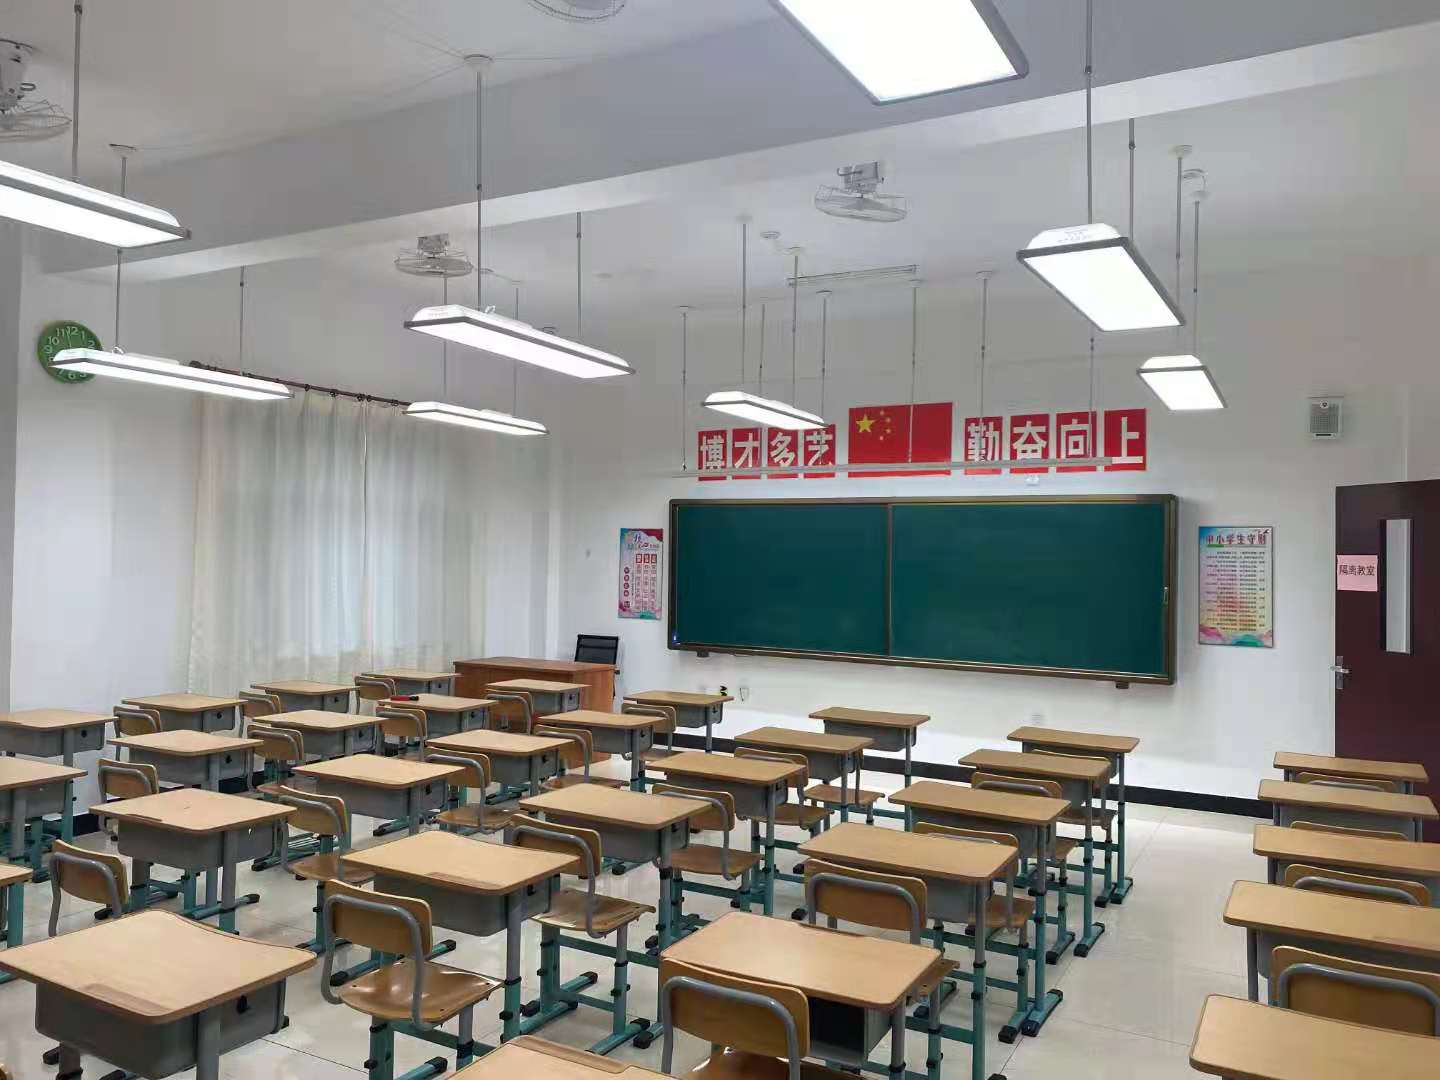 教室一般用什么灯才符合国家标准？